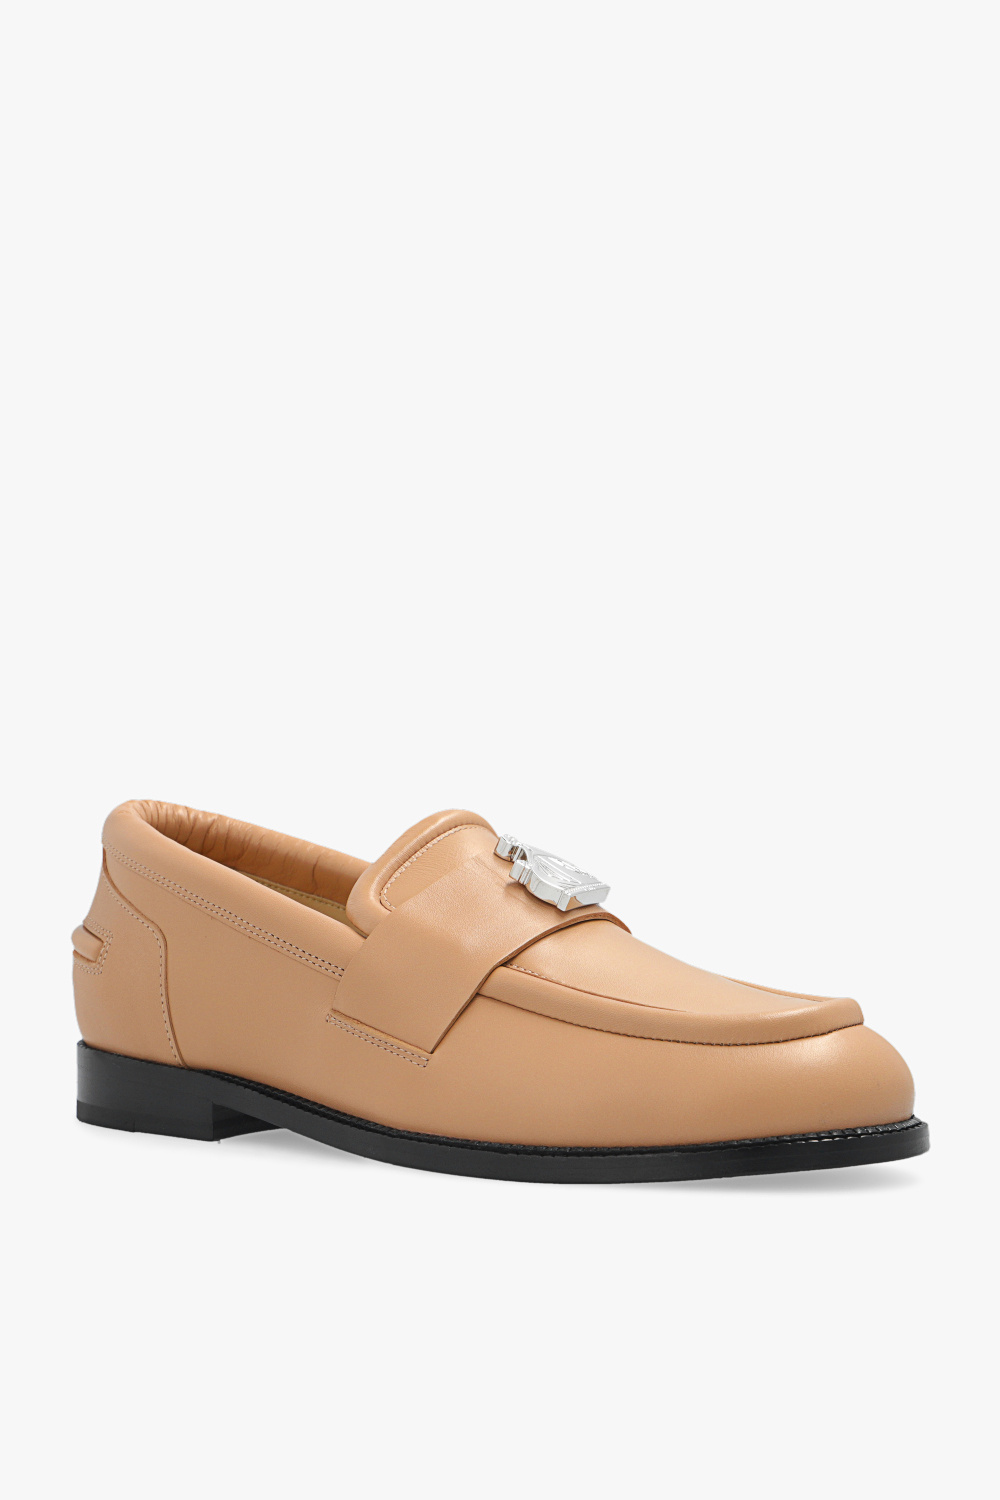 Lanvin Leather shoes